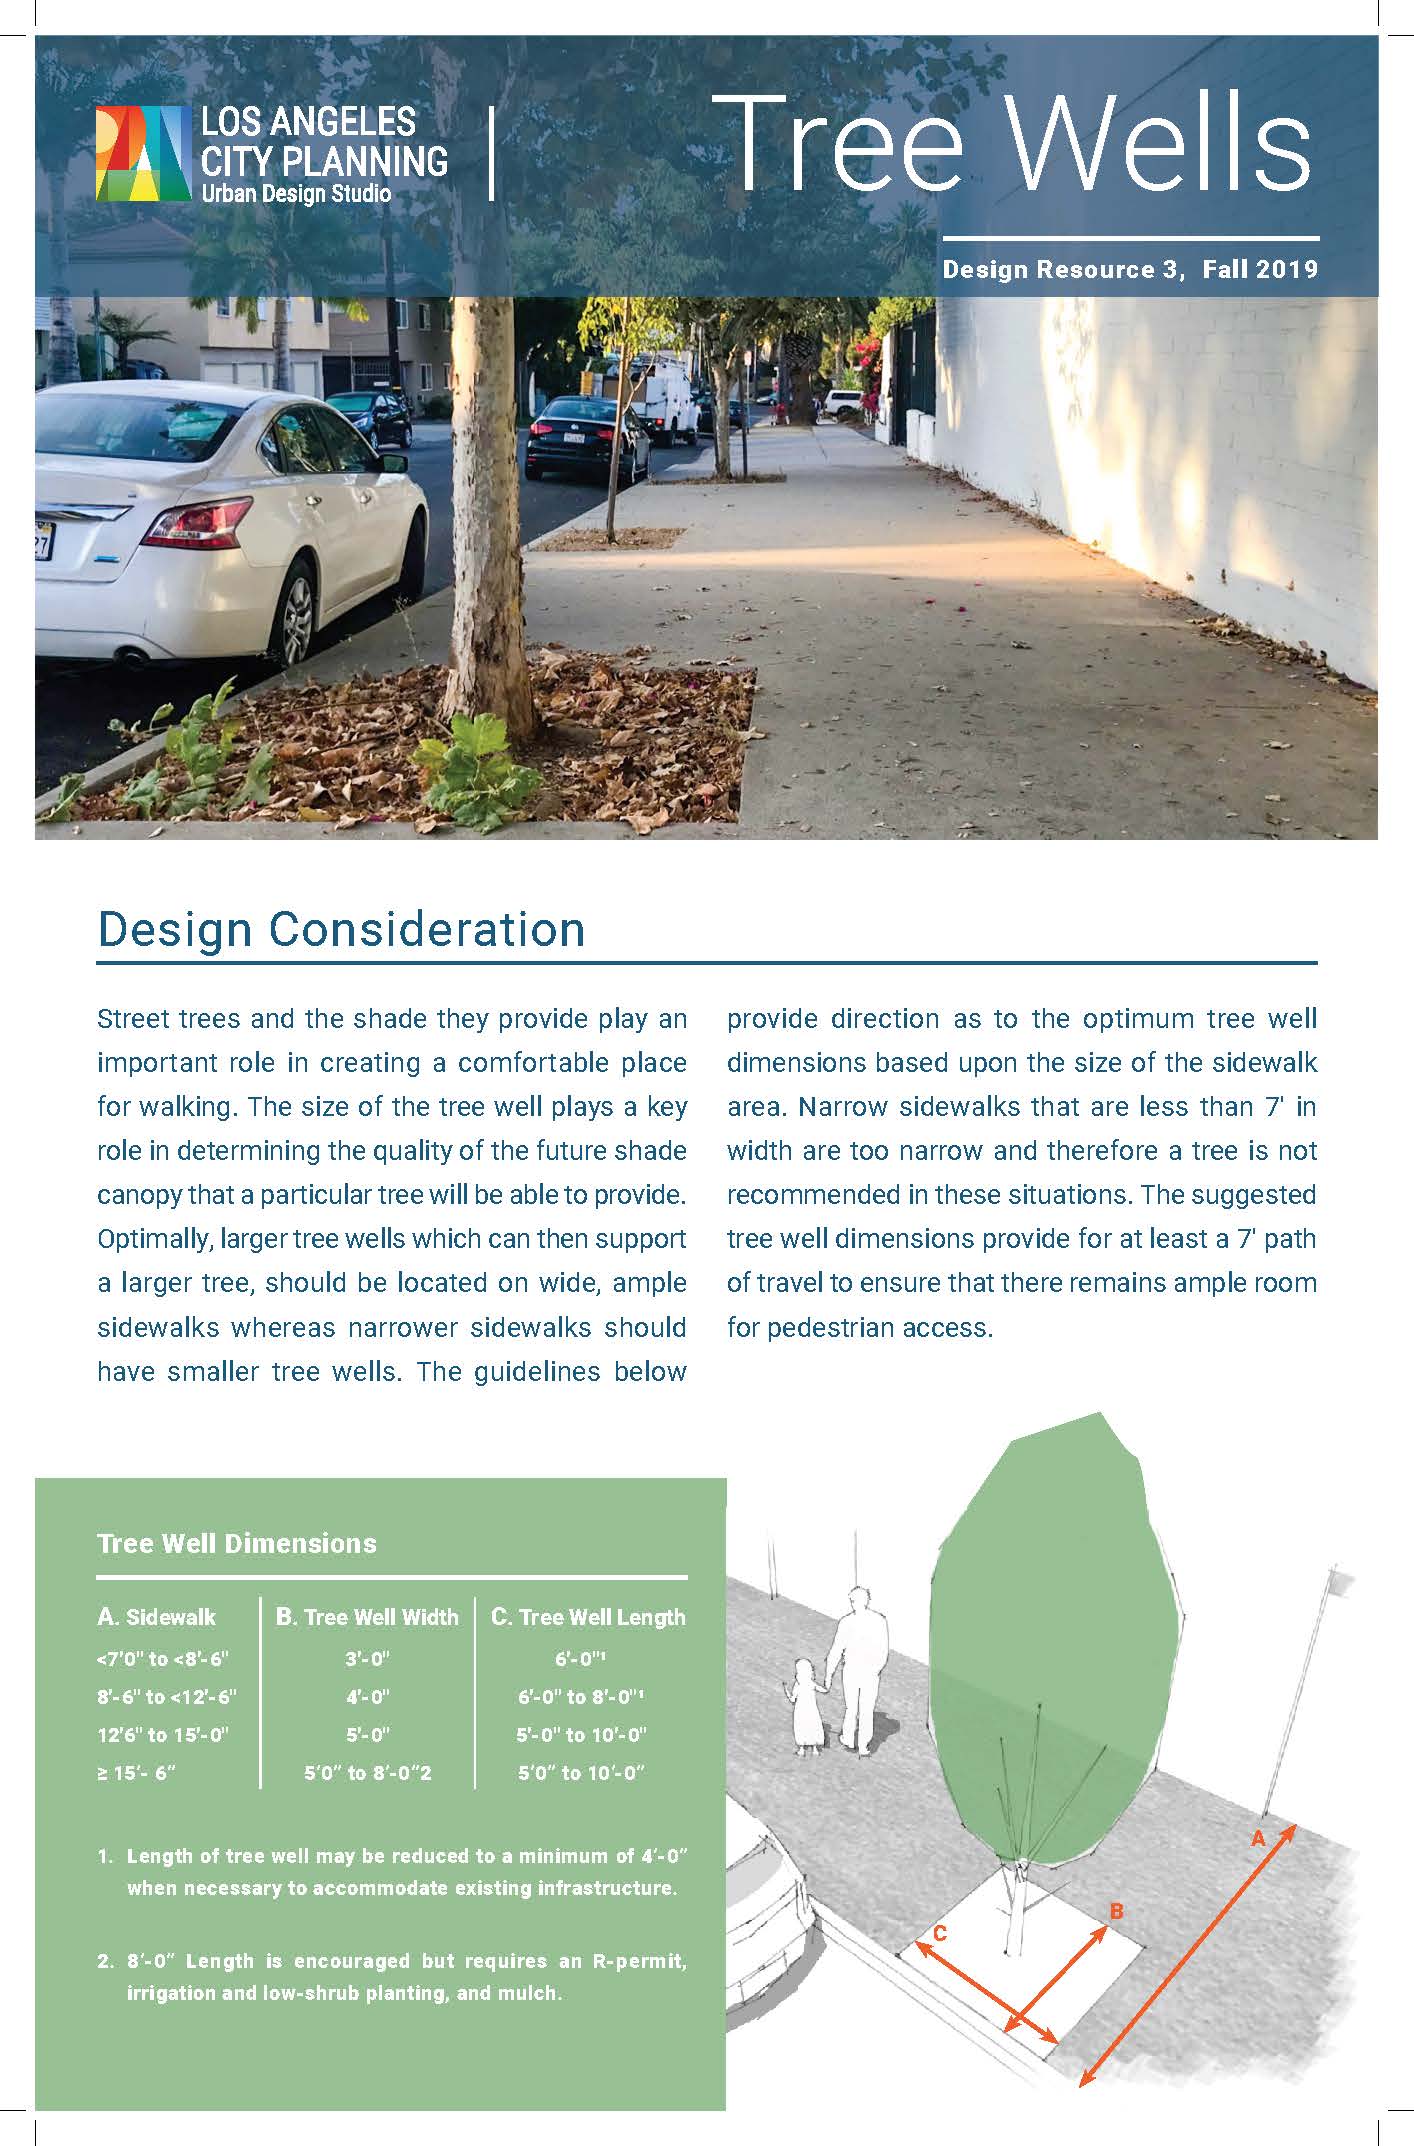 Design Resource 3: Tree Wells